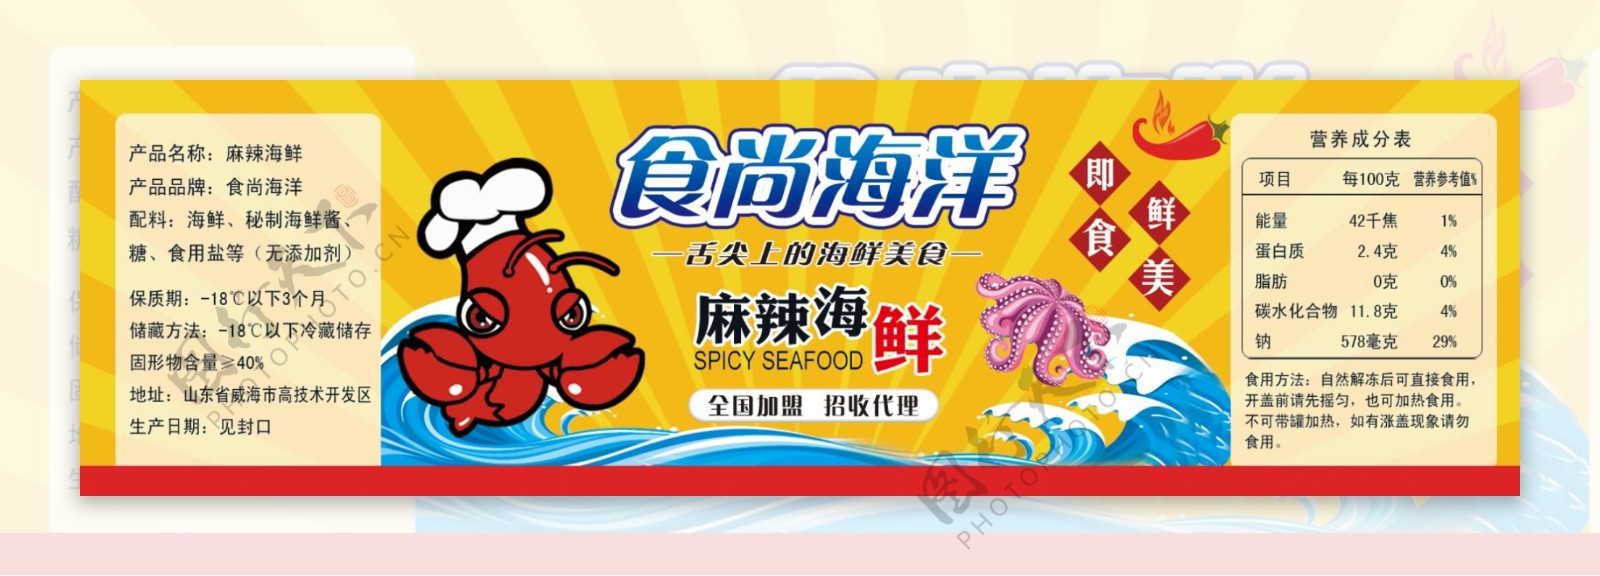 麻辣小海鲜螃蟹标签食品